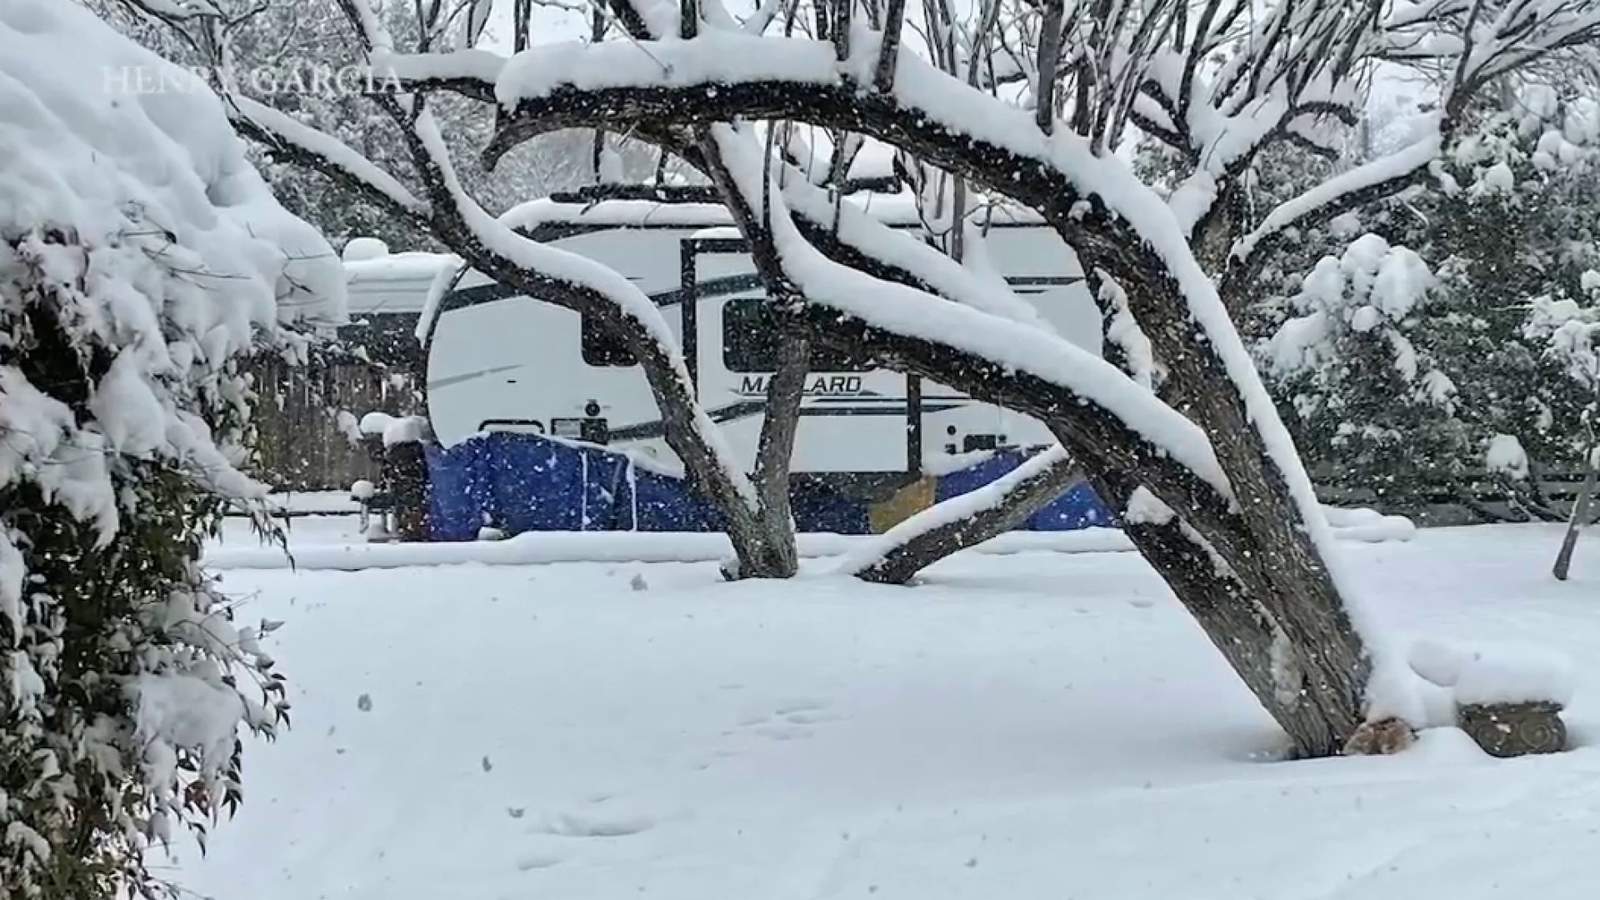 Winter wonderland turns into winter crisis in Brackettville